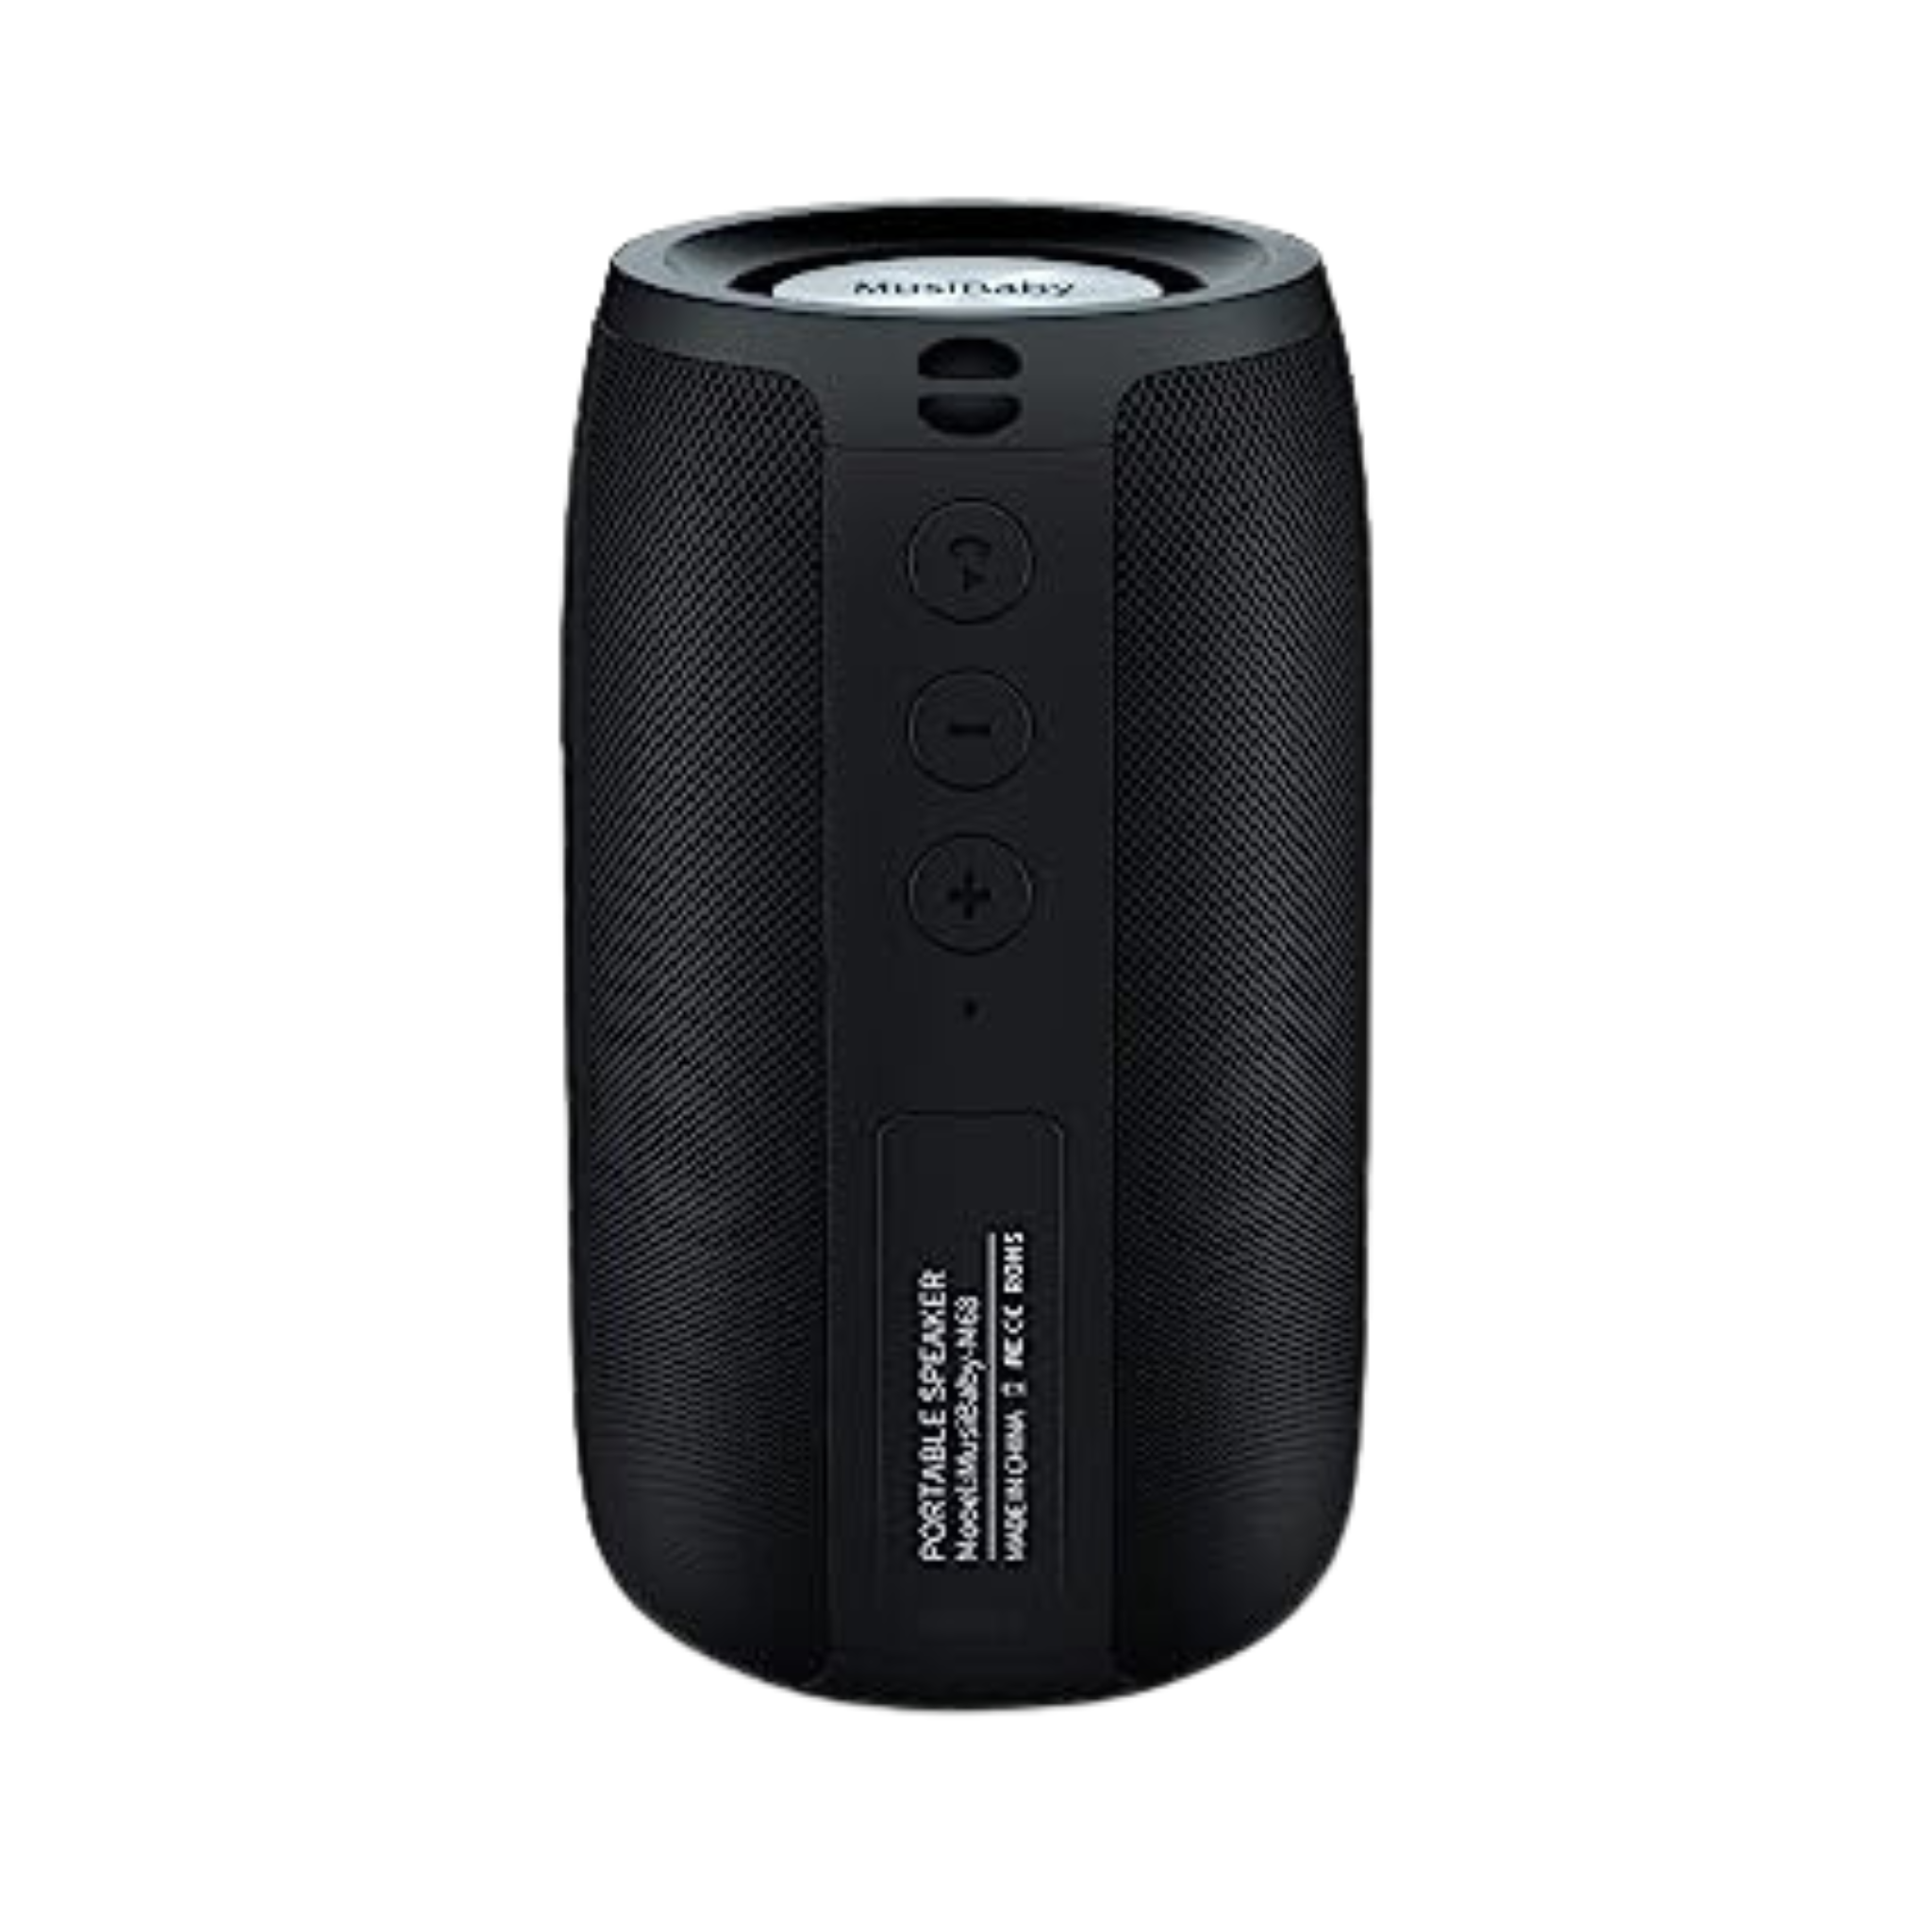 Wireless Bluetooth Speaker - Waterproof, Dual Pairing, Long Playtime - Black